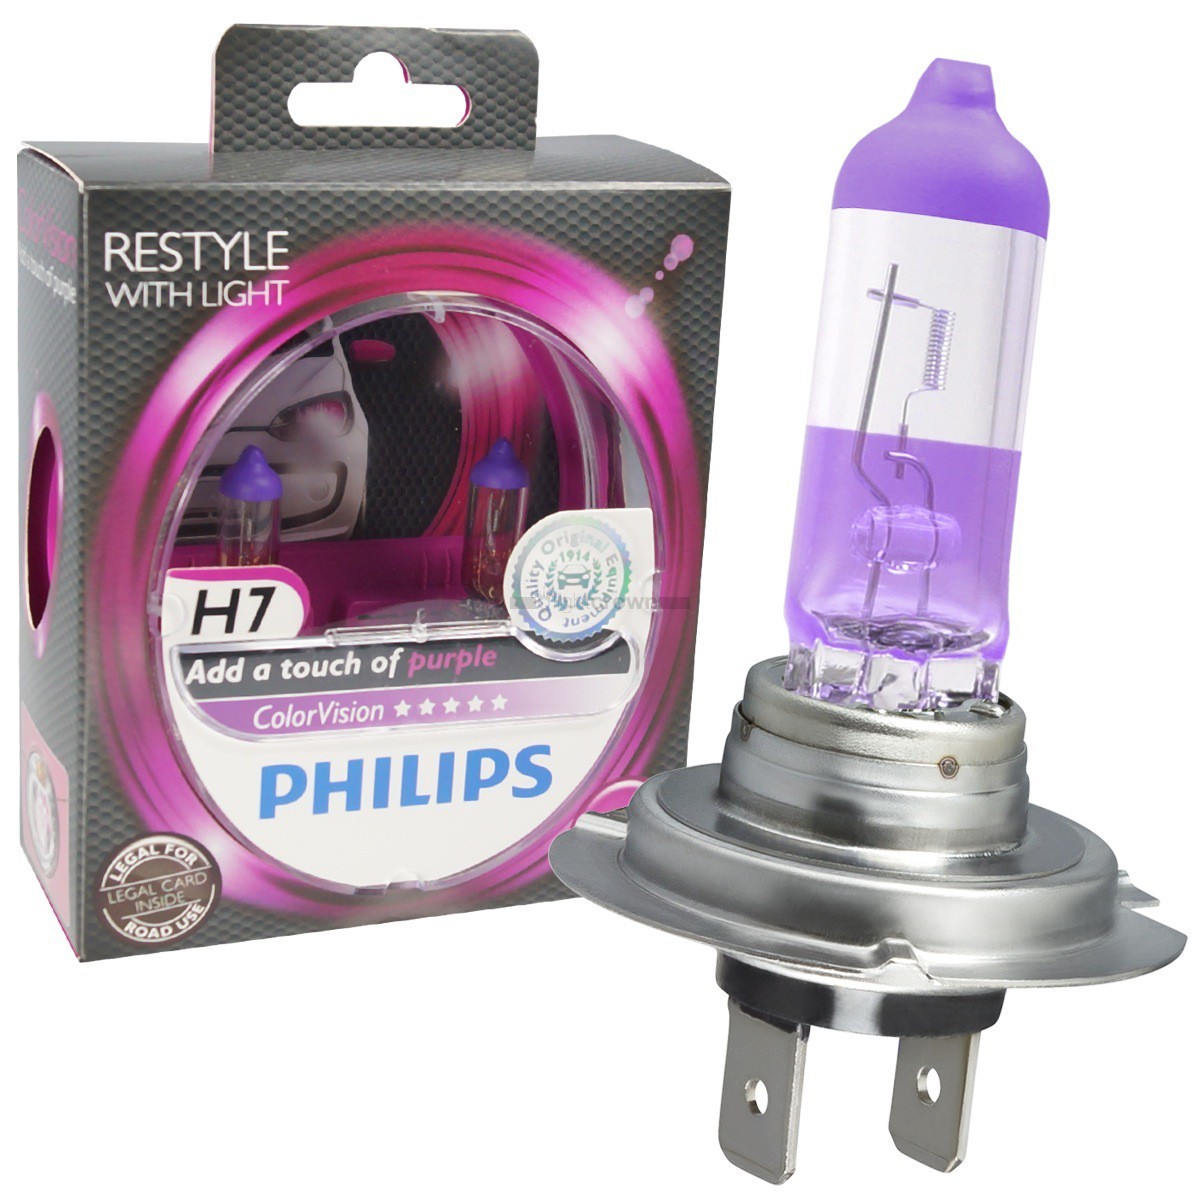 H7 12v 55w цена. Филипс лампы автомобильные h7. Галогеновые лампы Филипс h7. Лампы h7 Philips COLORVISION. Лампа галогеновая h4 COLORVISION.